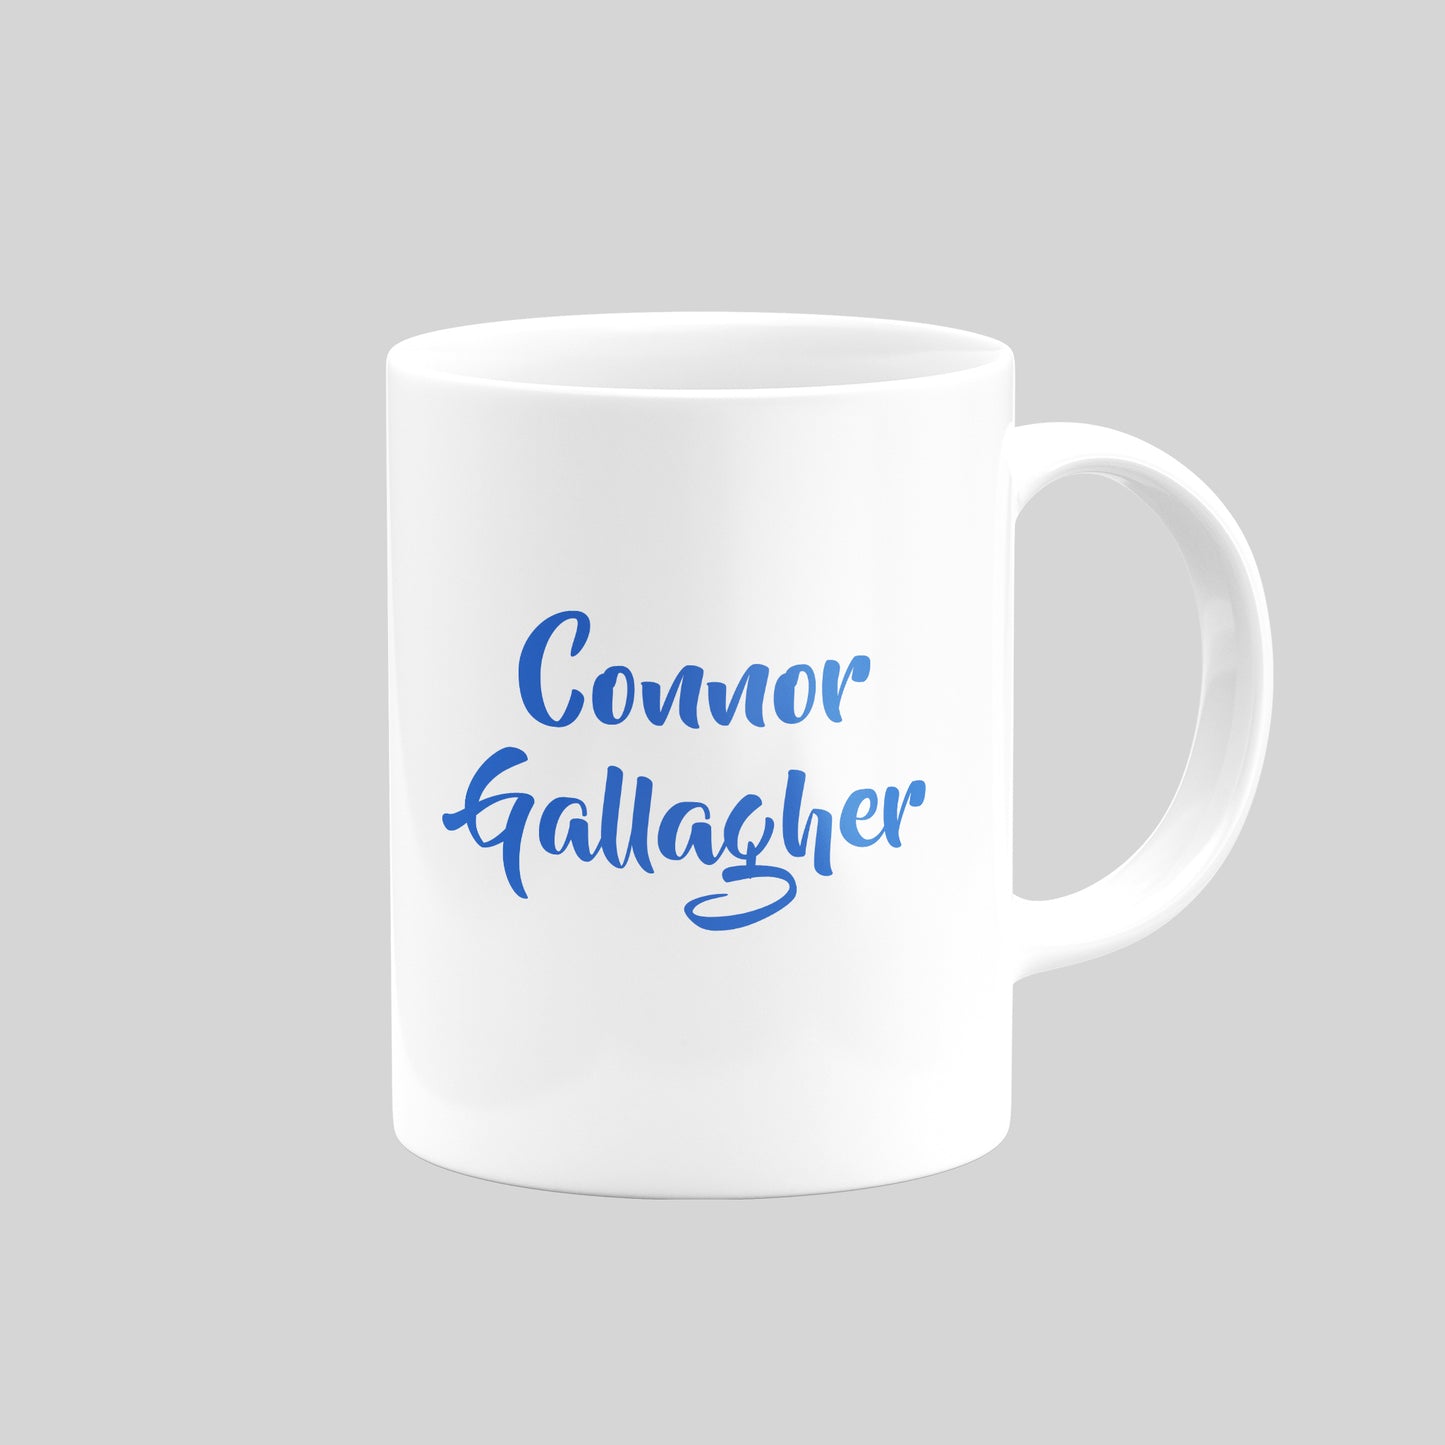 Connor Gallagher Mug